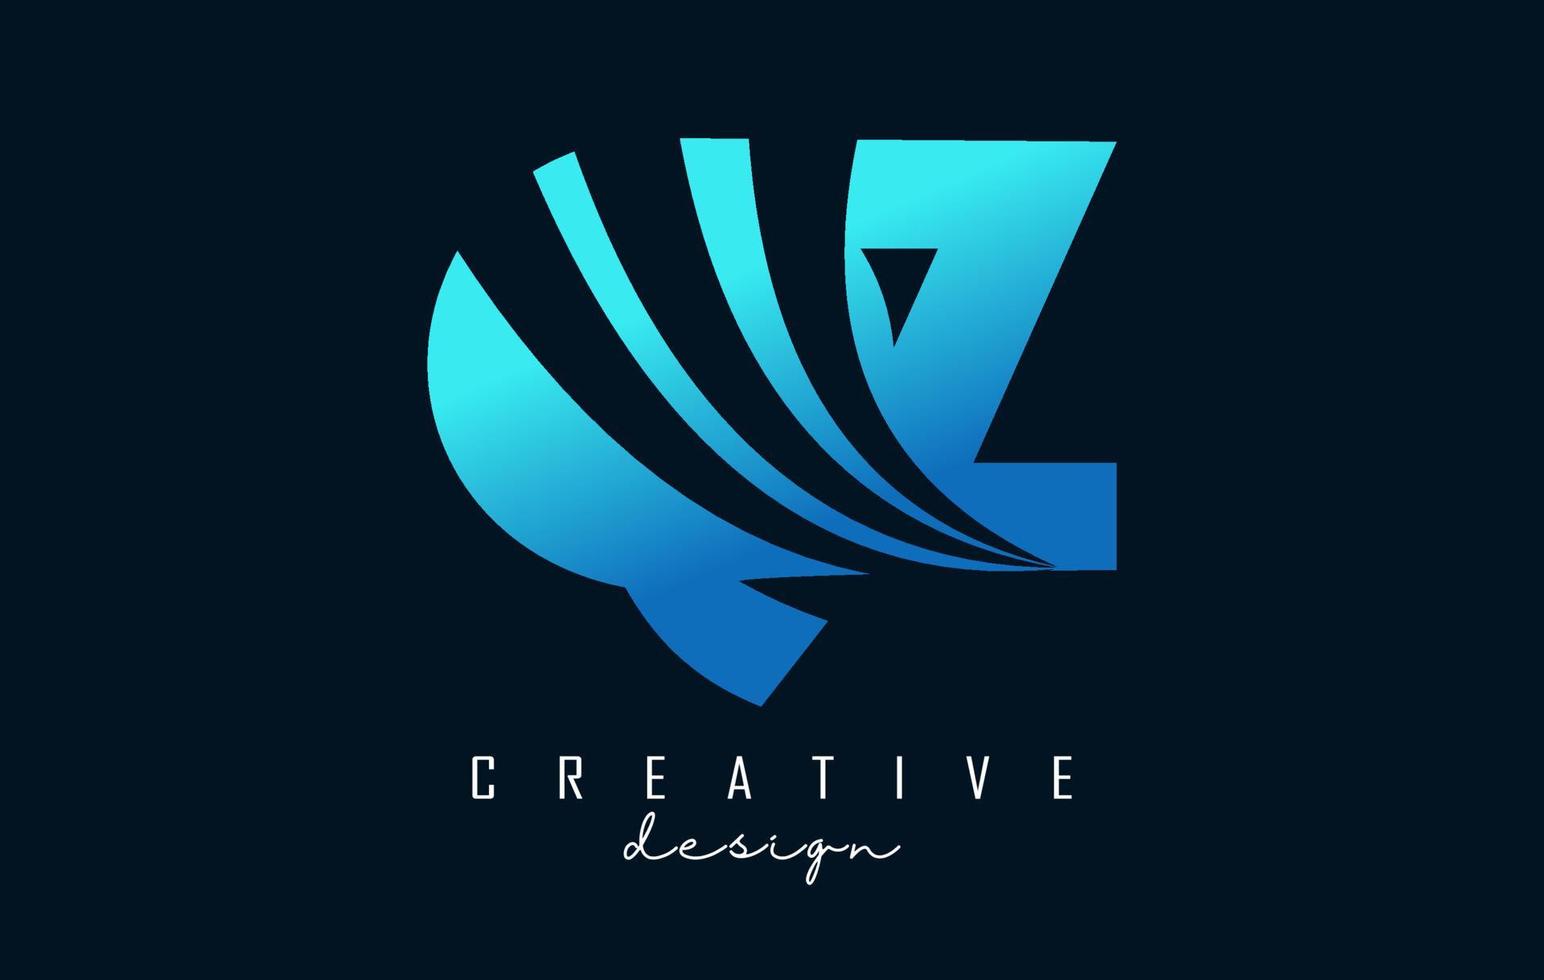 kreative blaue buchstaben qz qz logo mit führenden linien und straßenkonzeptdesign. Buchstaben mit geometrischem Design. vektor